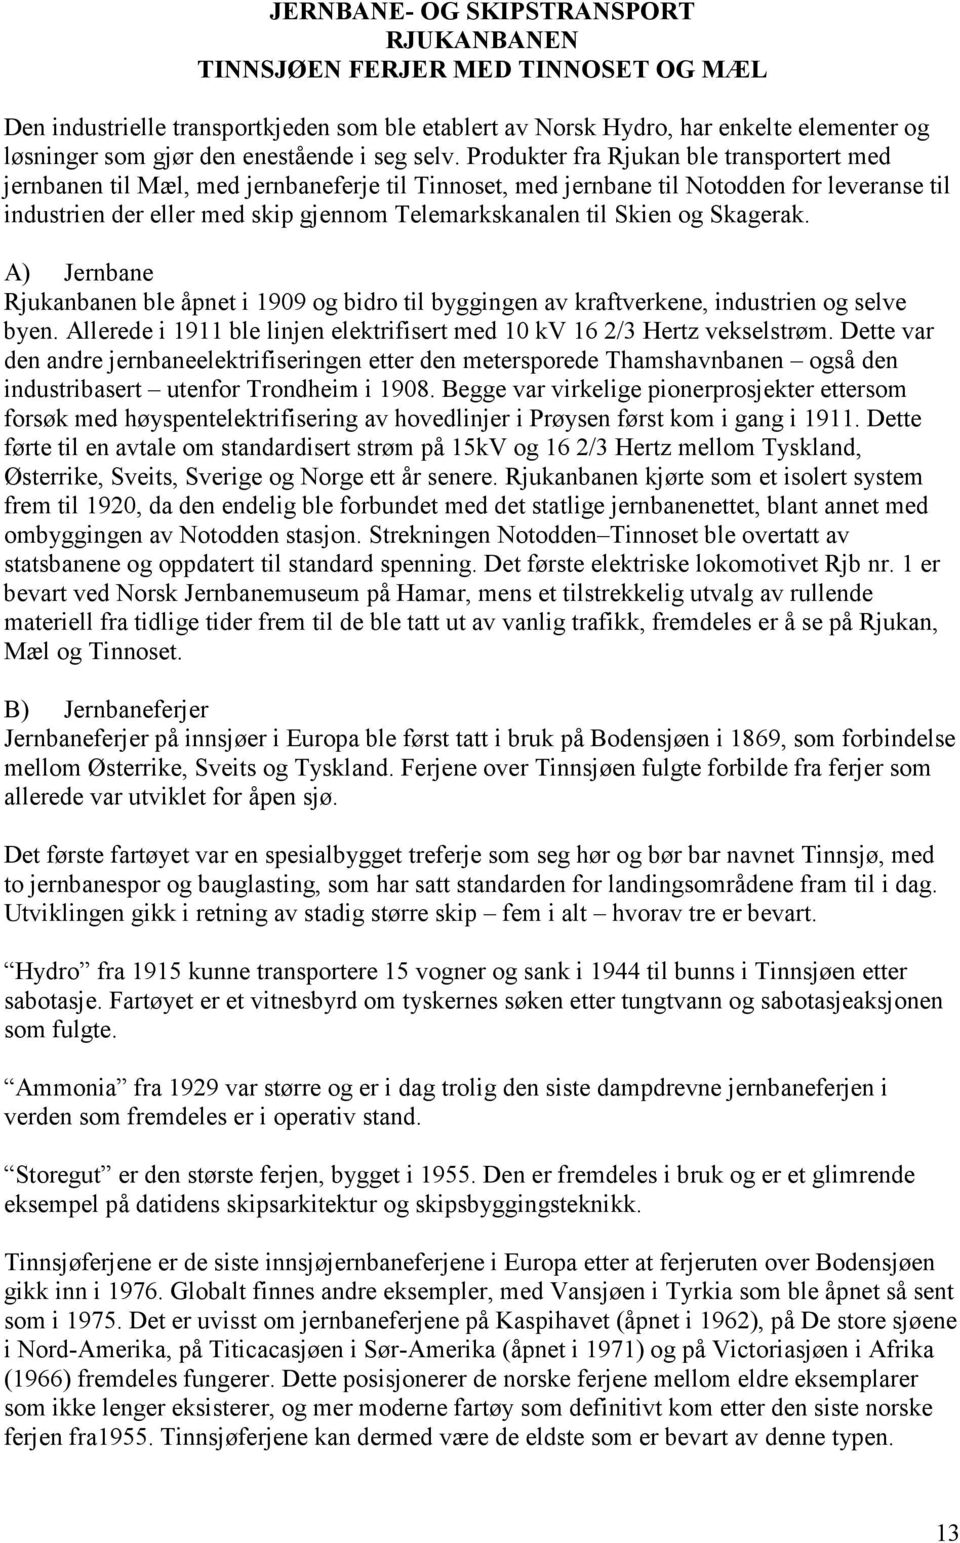 Produkter fra Rjukan ble transportert med jernbanen til Mæl, med jernbaneferje til Tinnoset, med jernbane til Notodden for leveranse til industrien der eller med skip gjennom Telemarkskanalen til